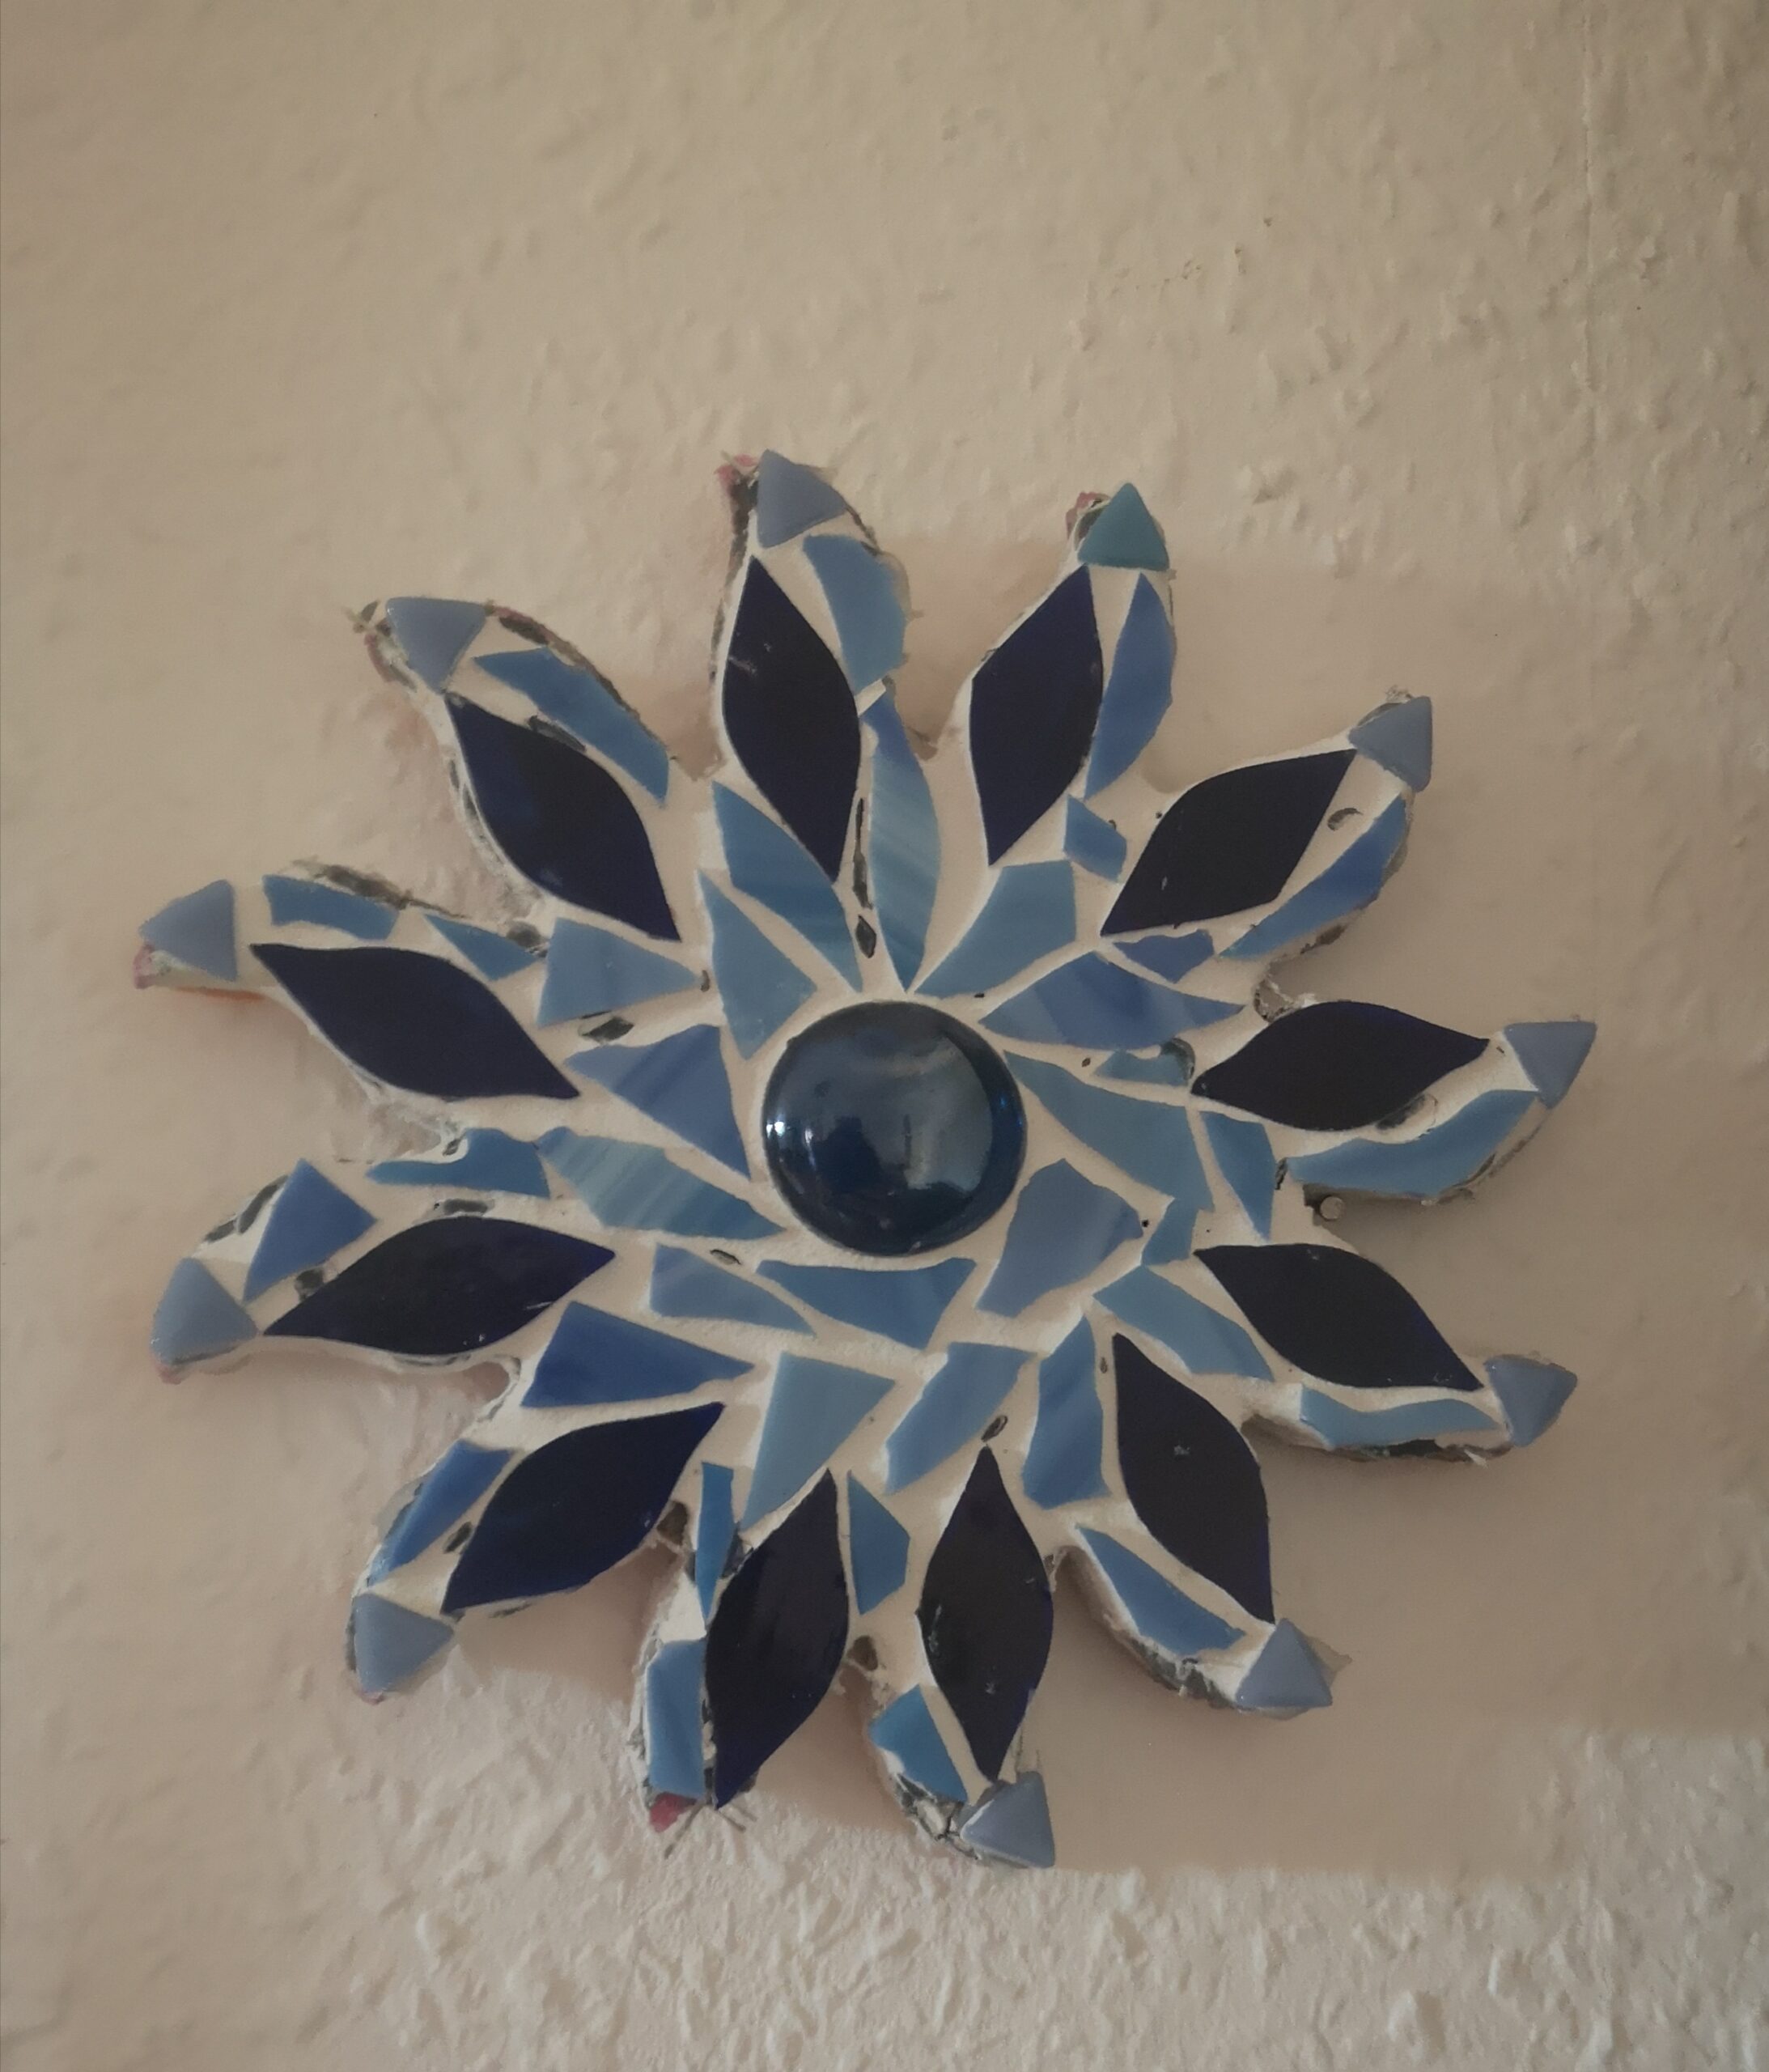 Bild einer Sonner mit Mosaik gestaltet in blau